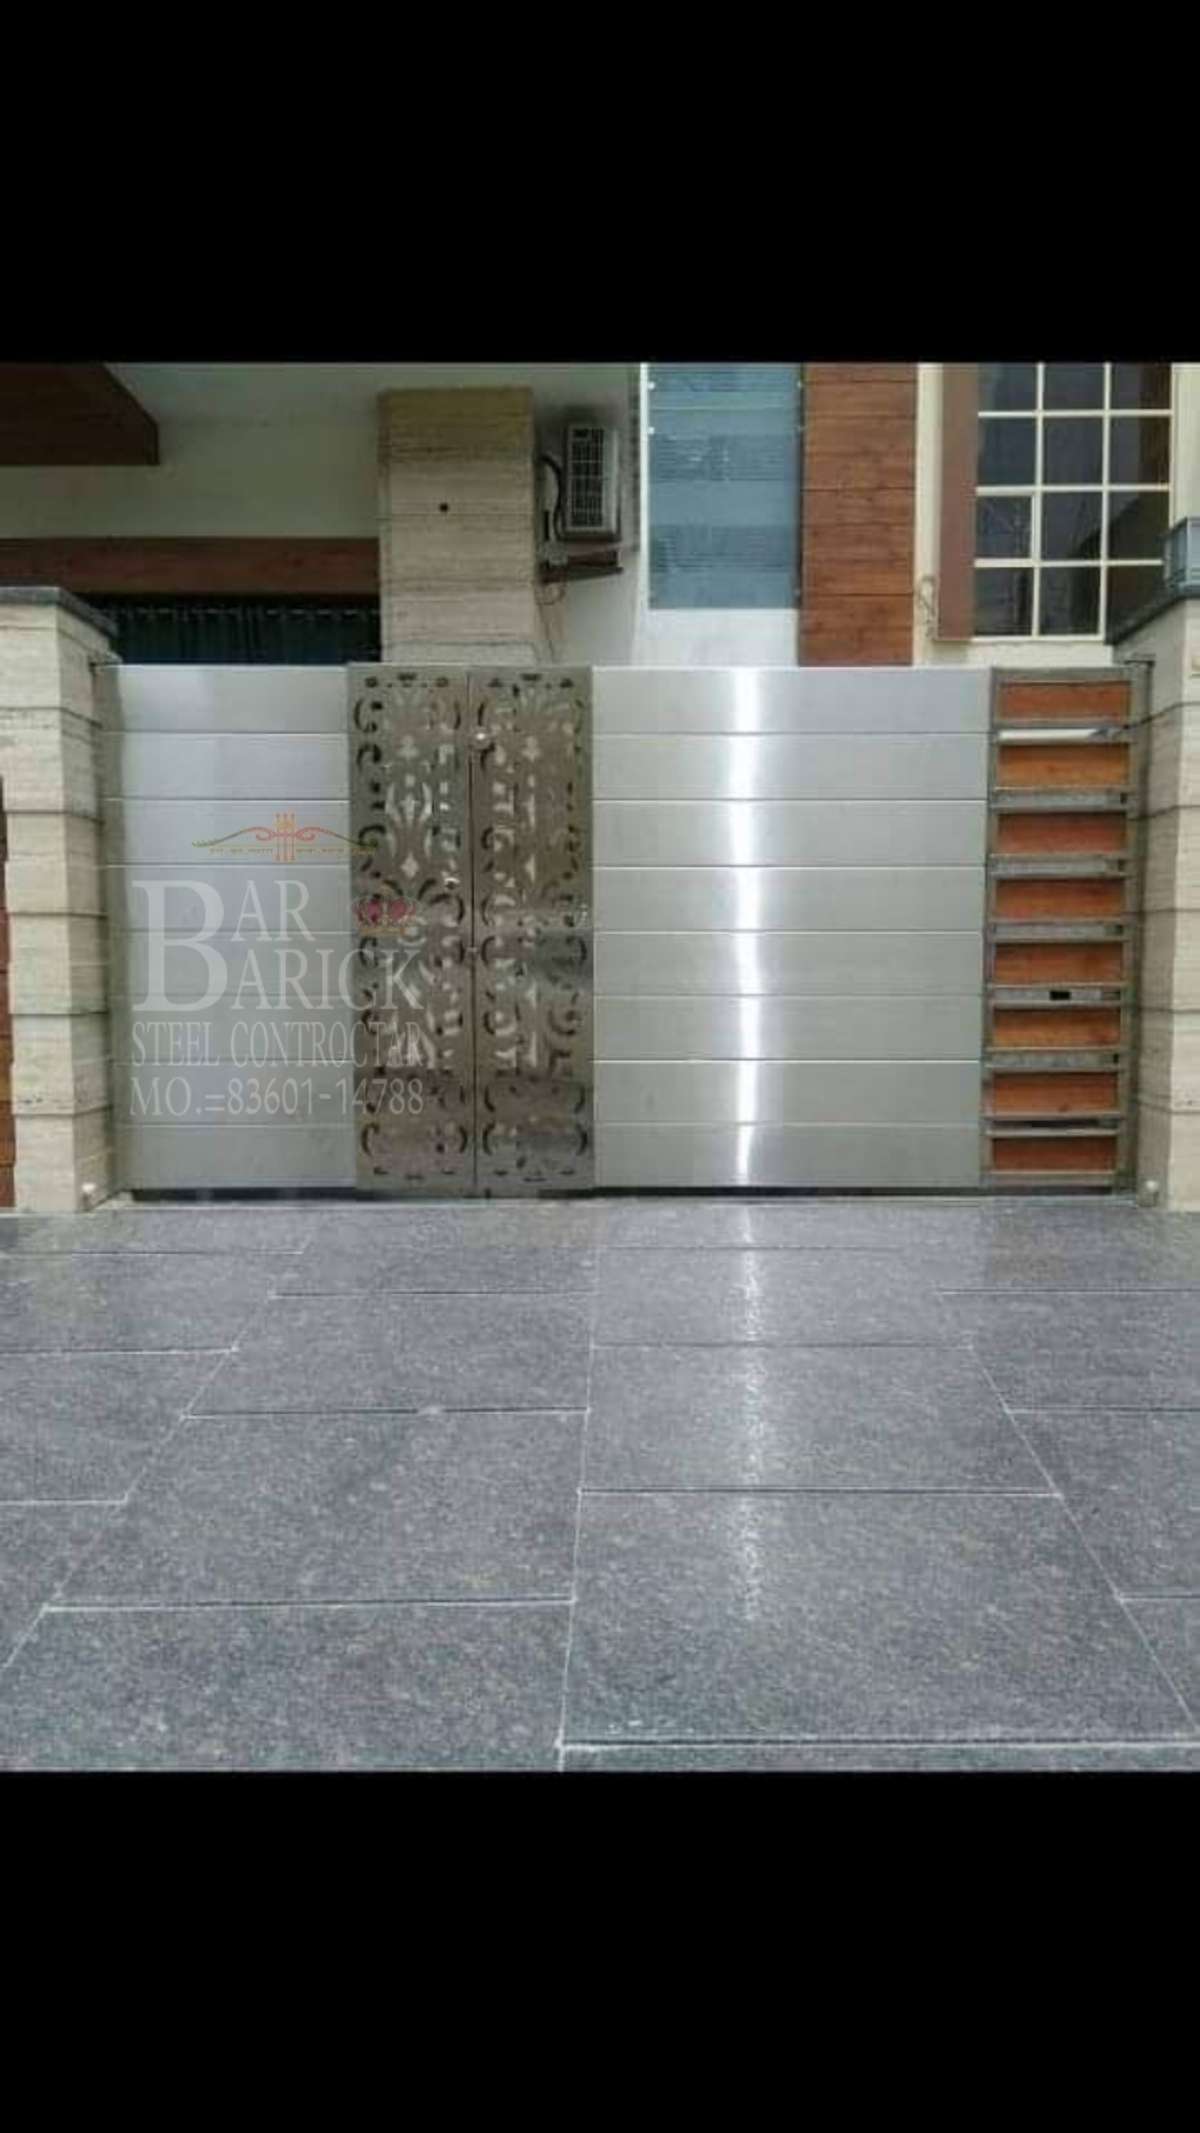 Designs by Building Supplies Barbarik Enterprises 8360114788, Delhi | Kolo